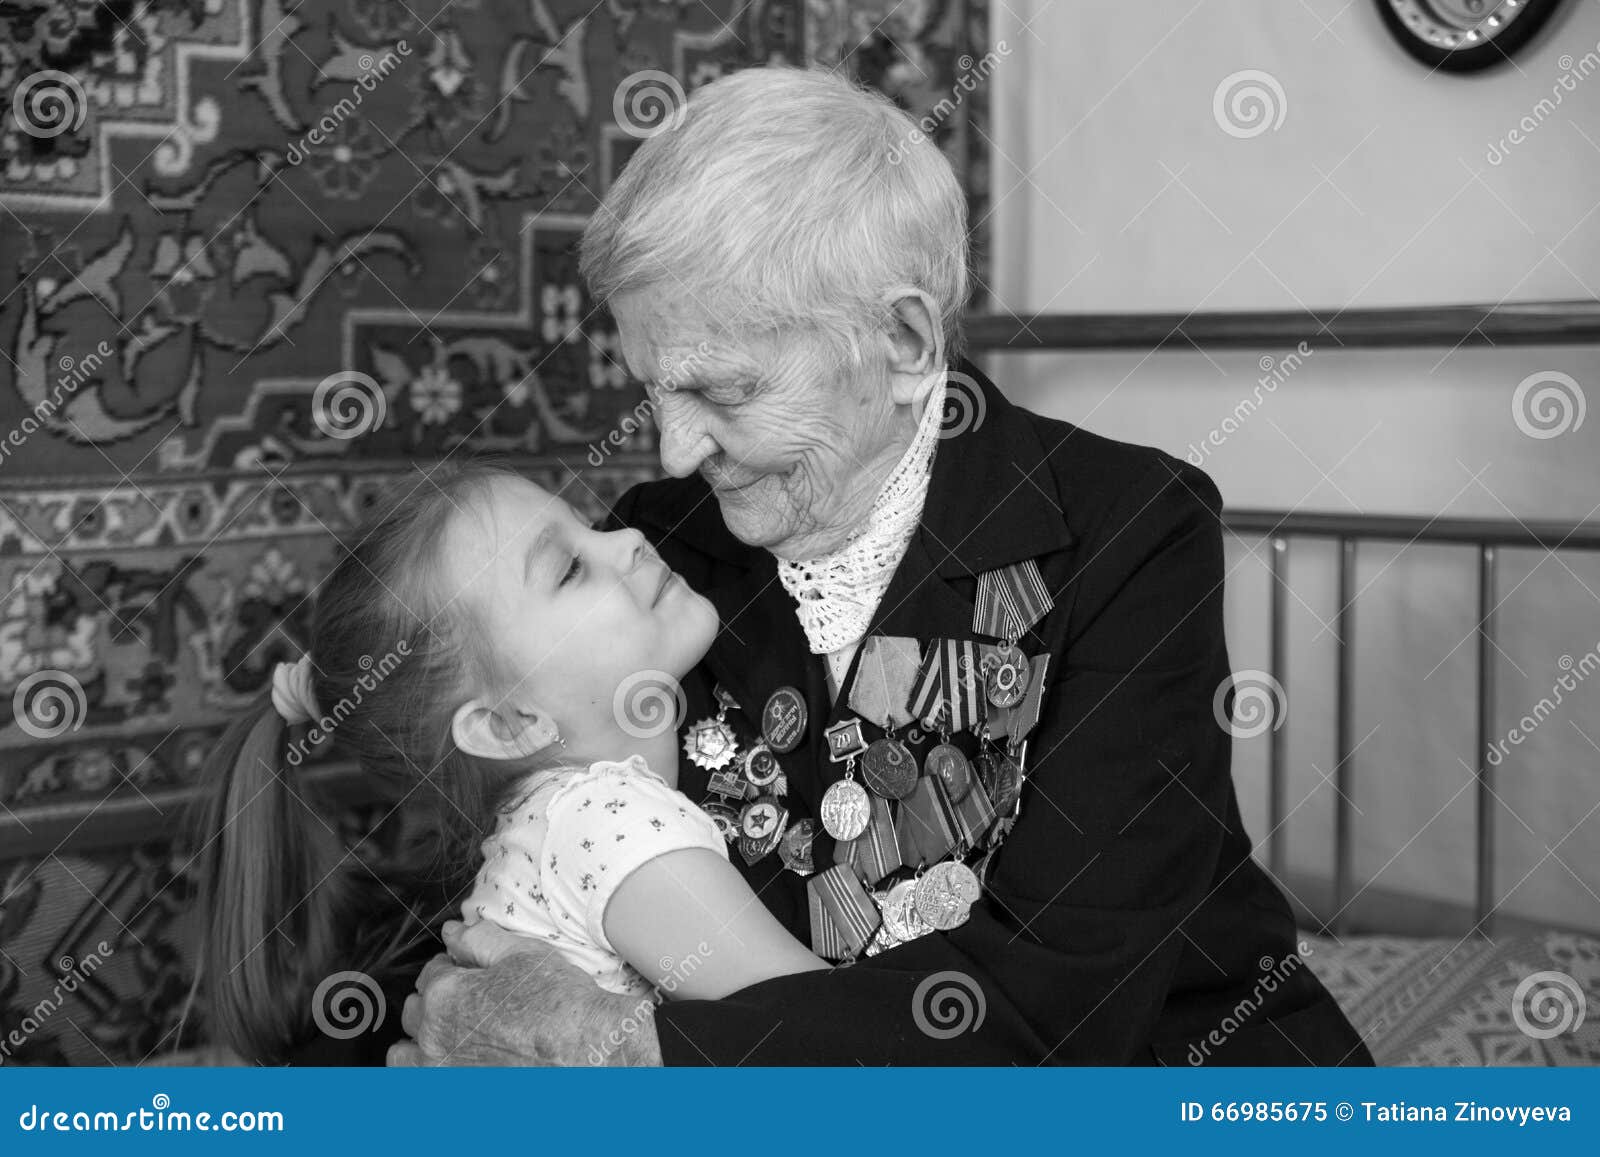 Бабка лижет внучке. Бабушка ветеран. Бабушка ветеран с внуком. Ветераны и дети. Ветеран с внучкой.